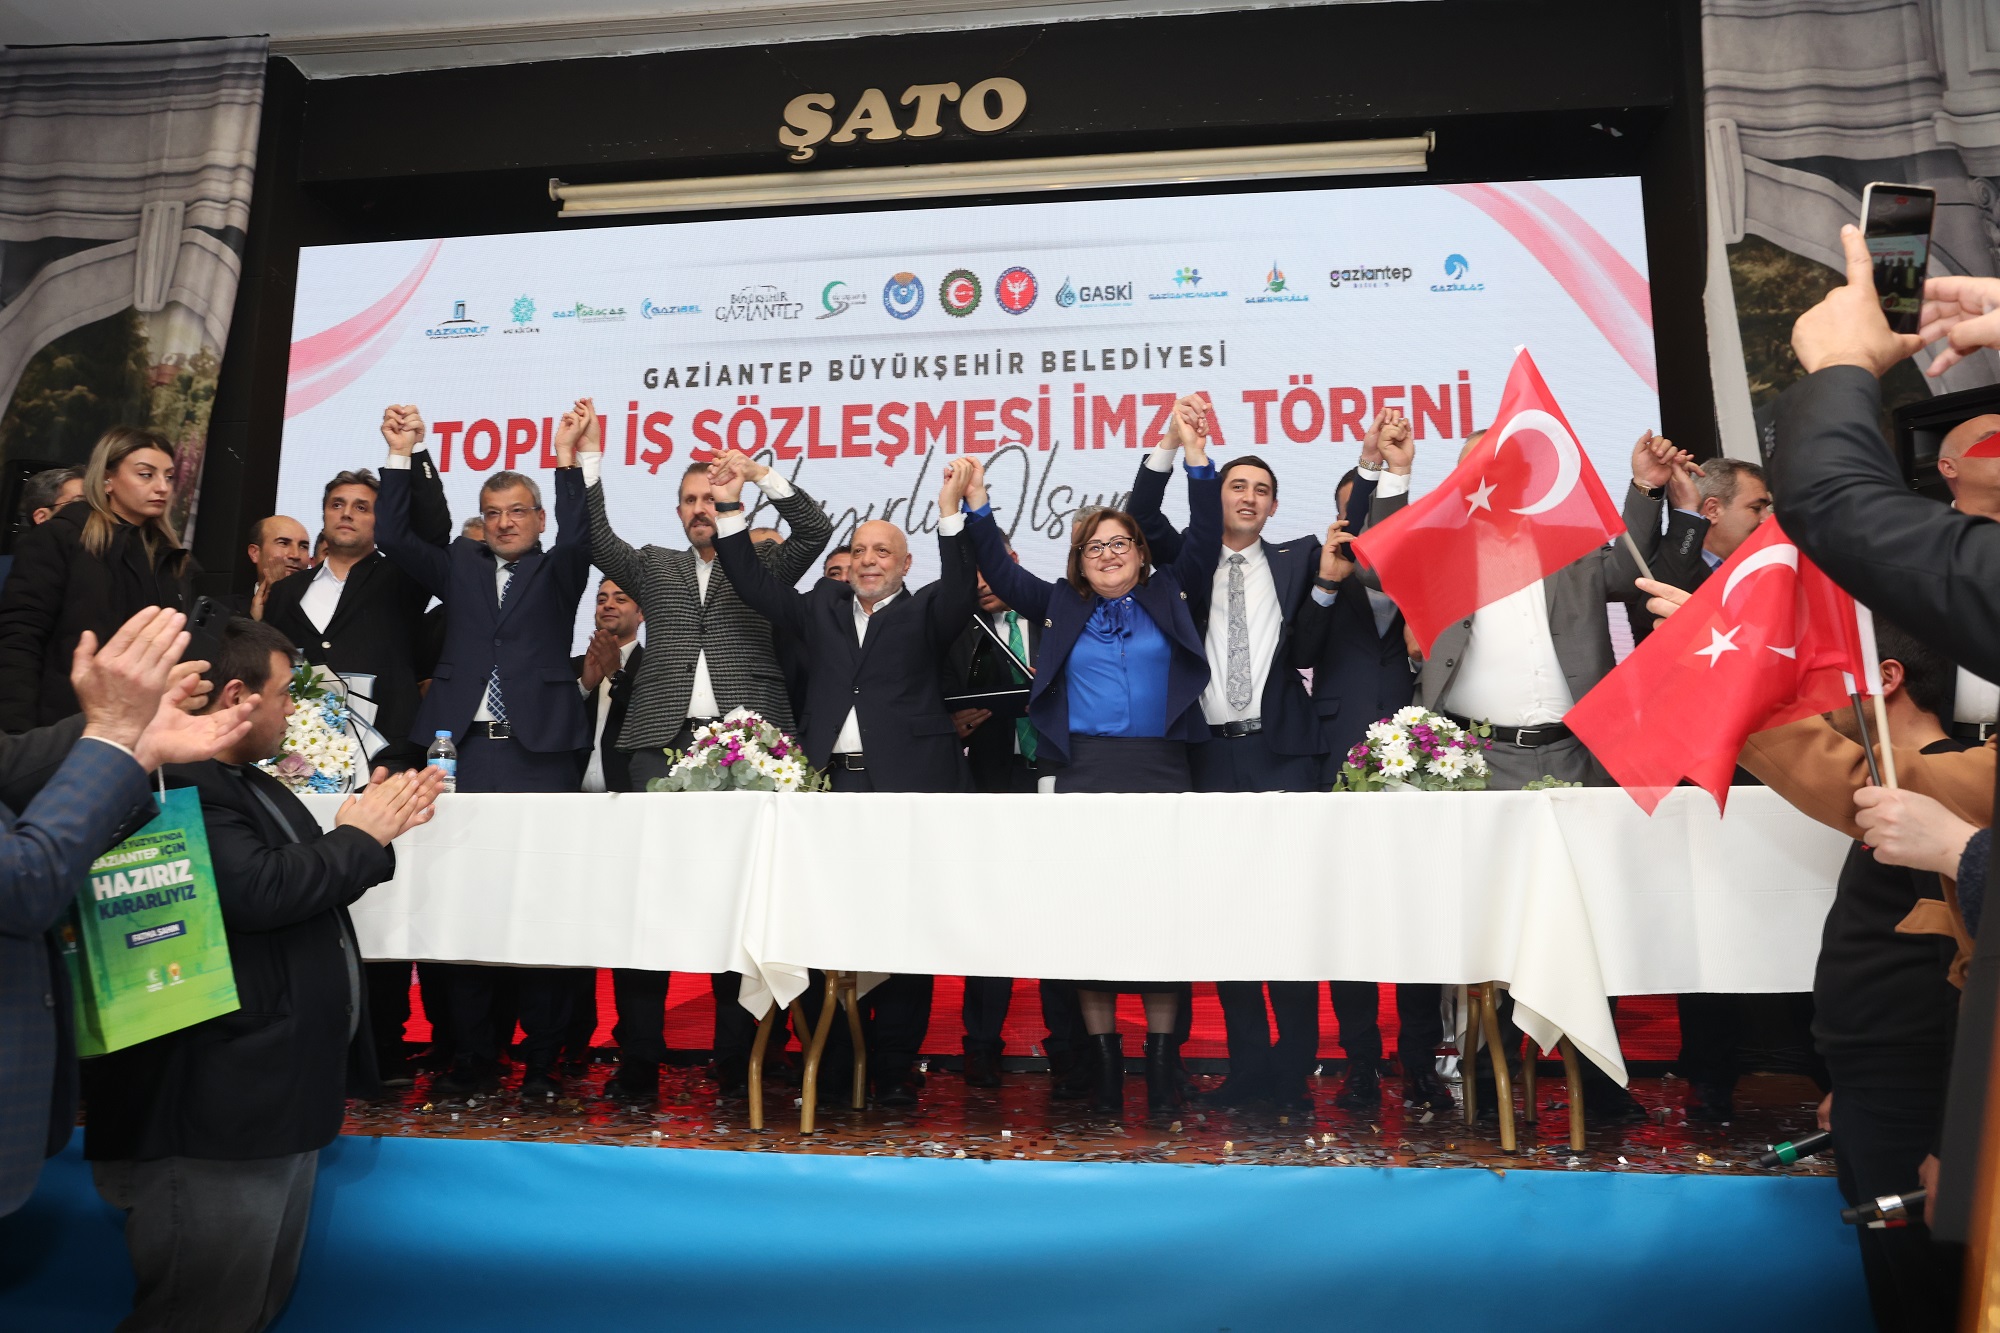 Gaziantep Büyükşehir Belediyesinde toplu iş sözleşmesi imzalandı